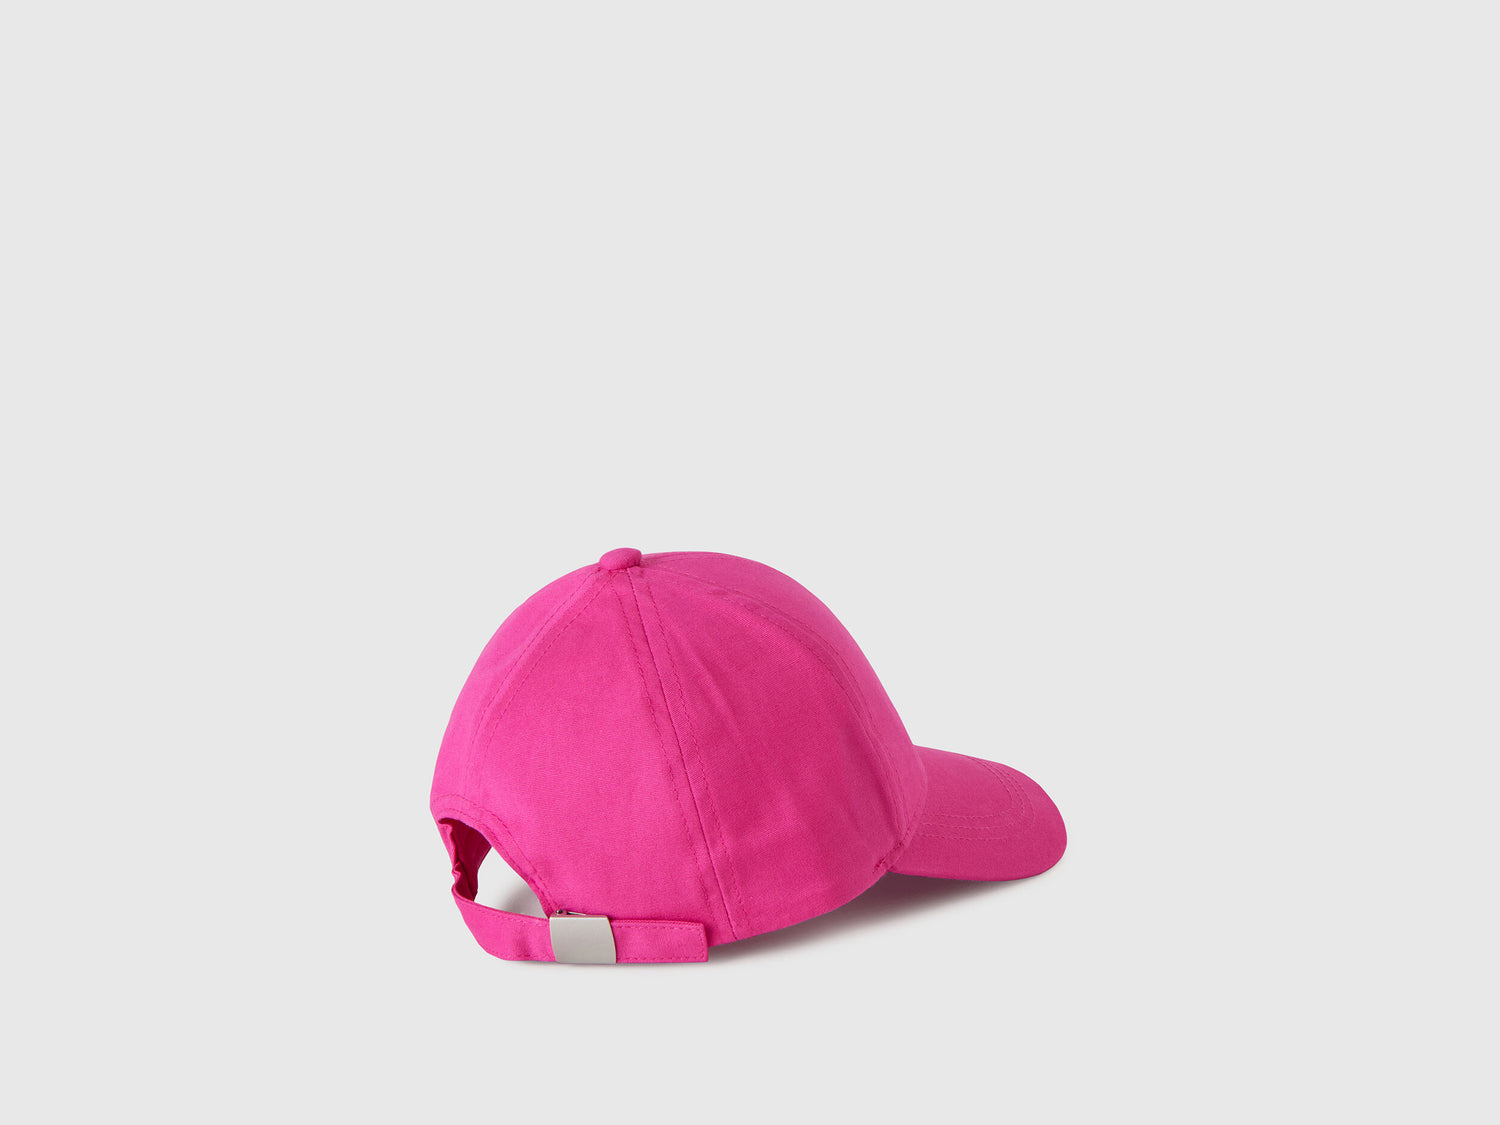 Cotton Hat With Brim - 02